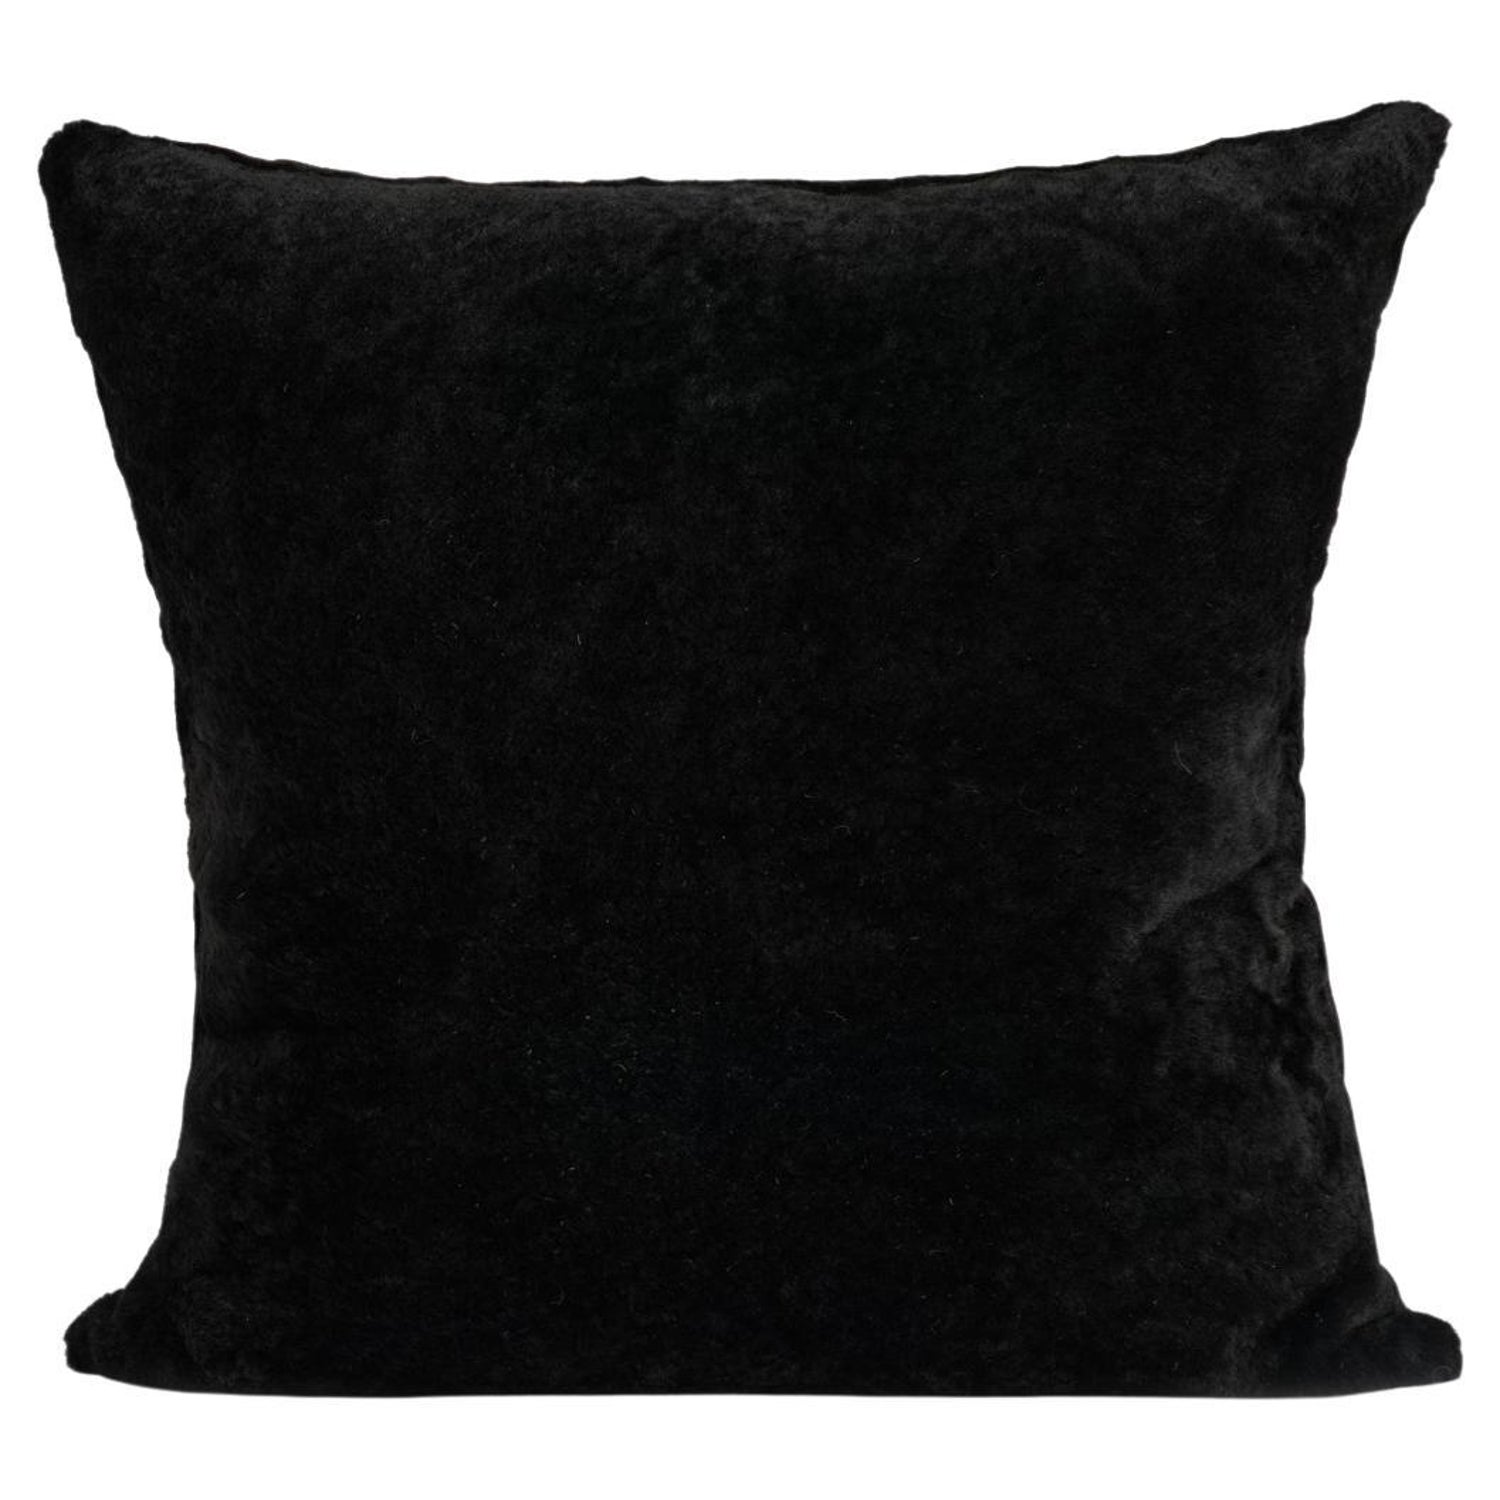 Large Plain Velvet Pillow Cover - Truffle